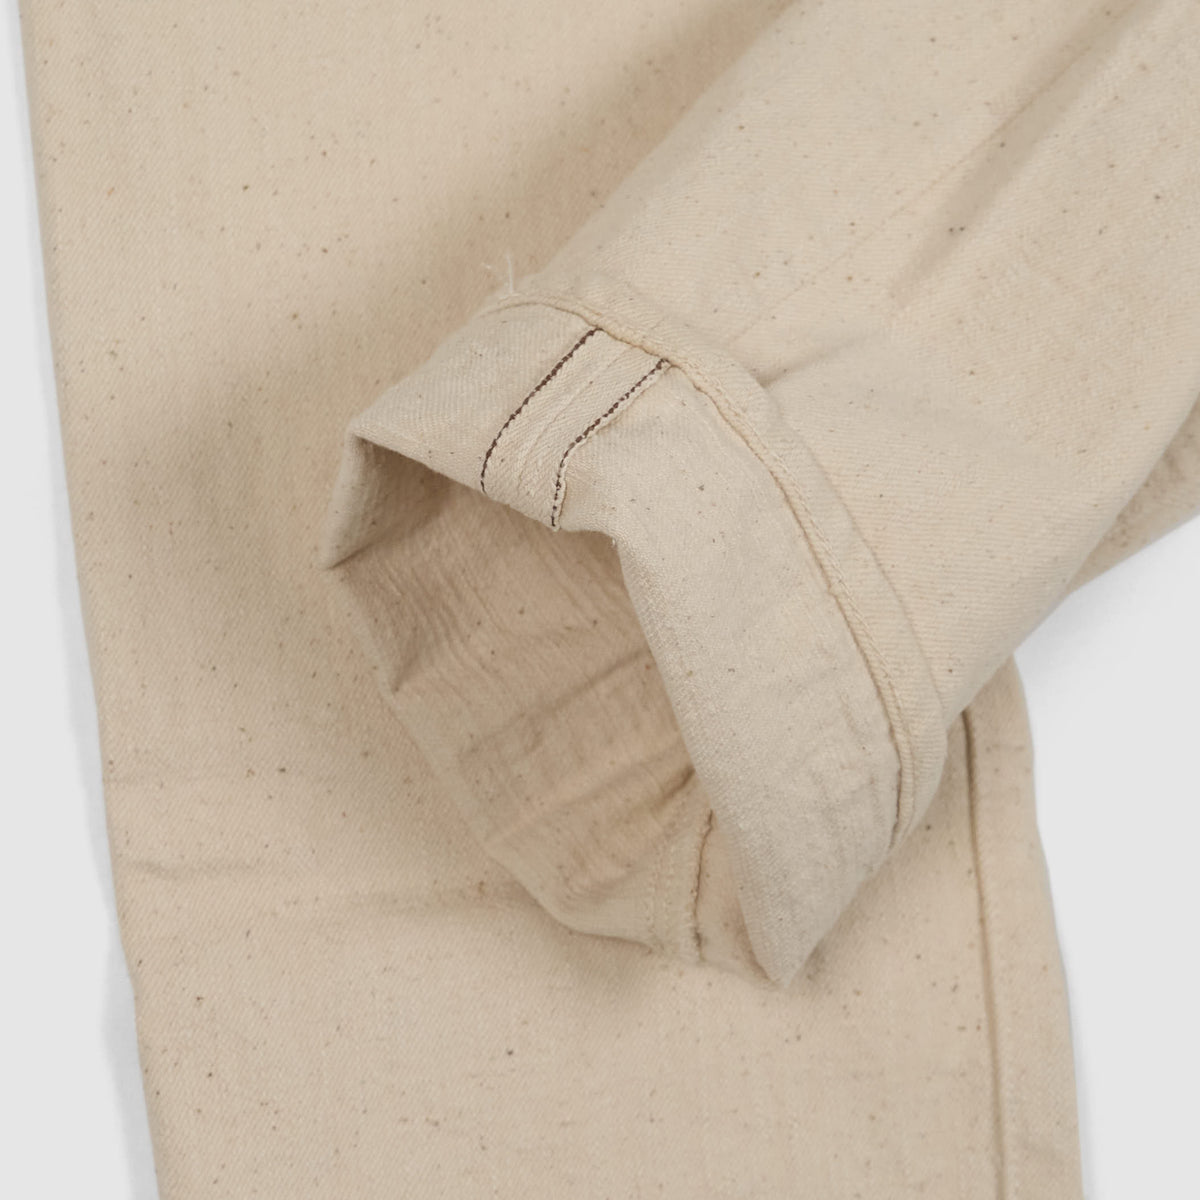 Samurai Jeans 5P Selvage Natural Denim &quot;S710SC-KI&quot; Cotton Project 18oz